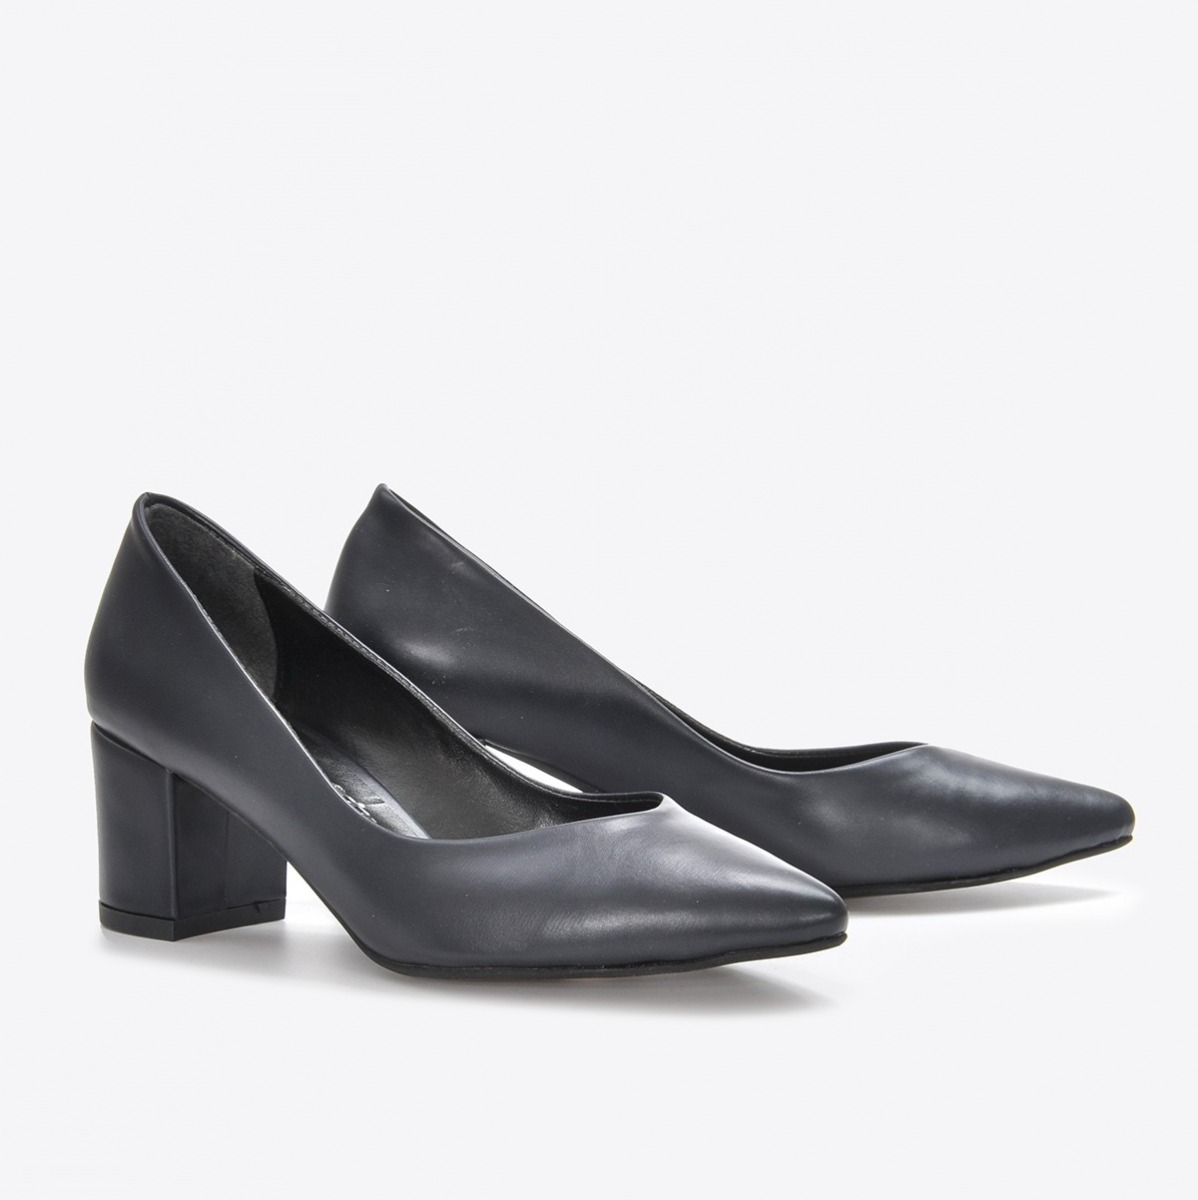 Flo Kadın  Lacivert Klasik Topuklu Ayakkabı VZN21-040Y. 4